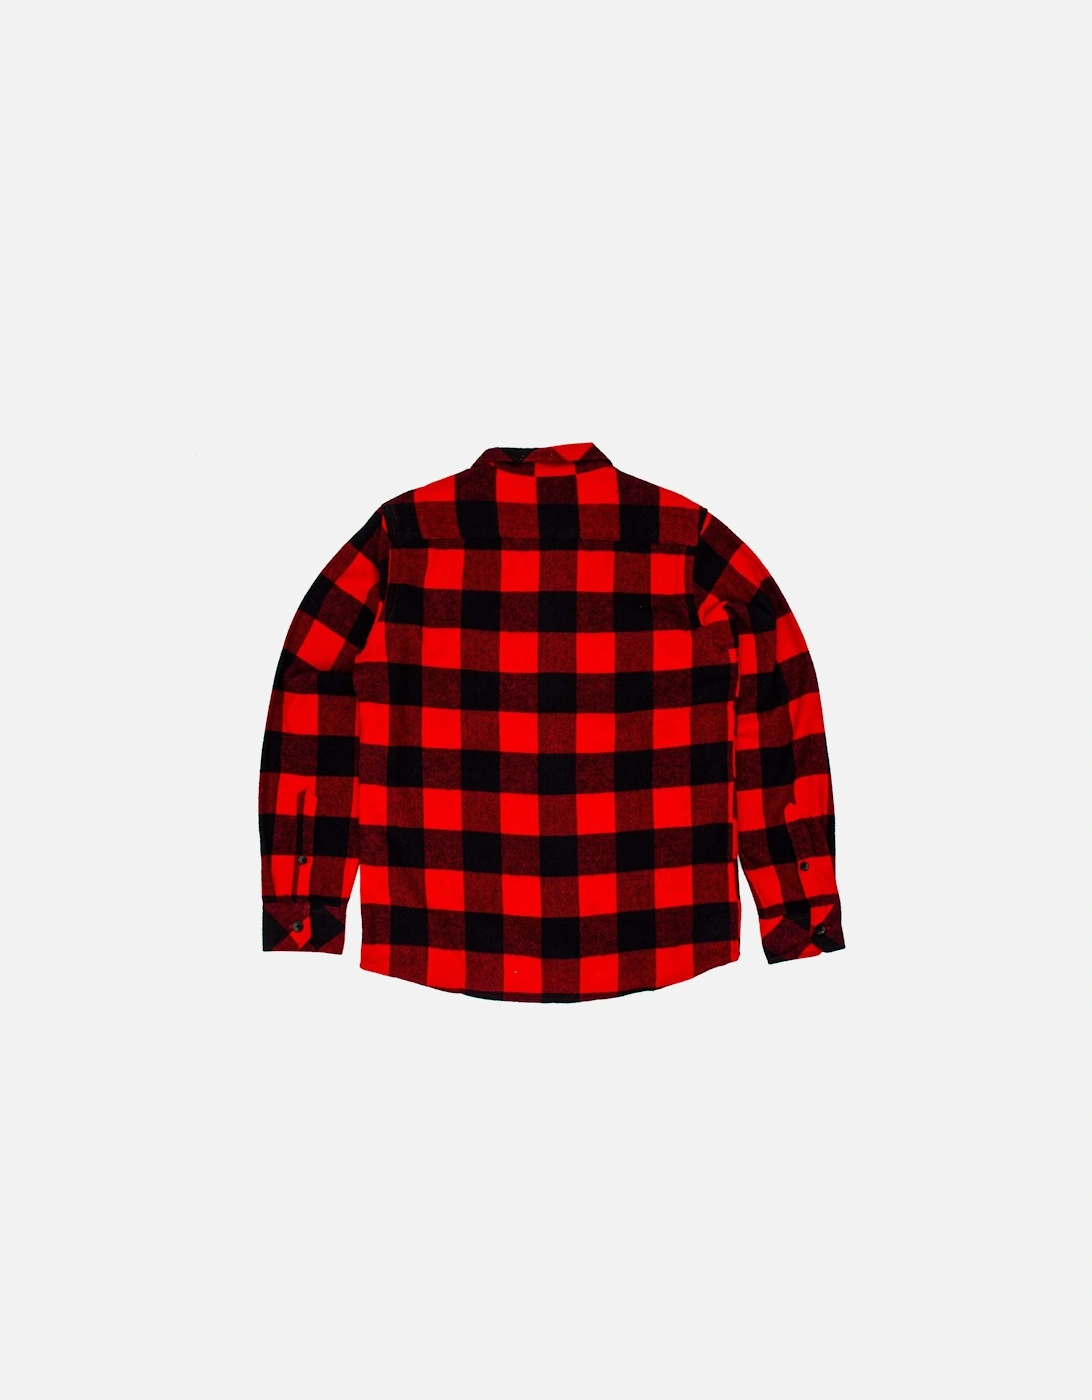 New Sacramento Shirt - Red